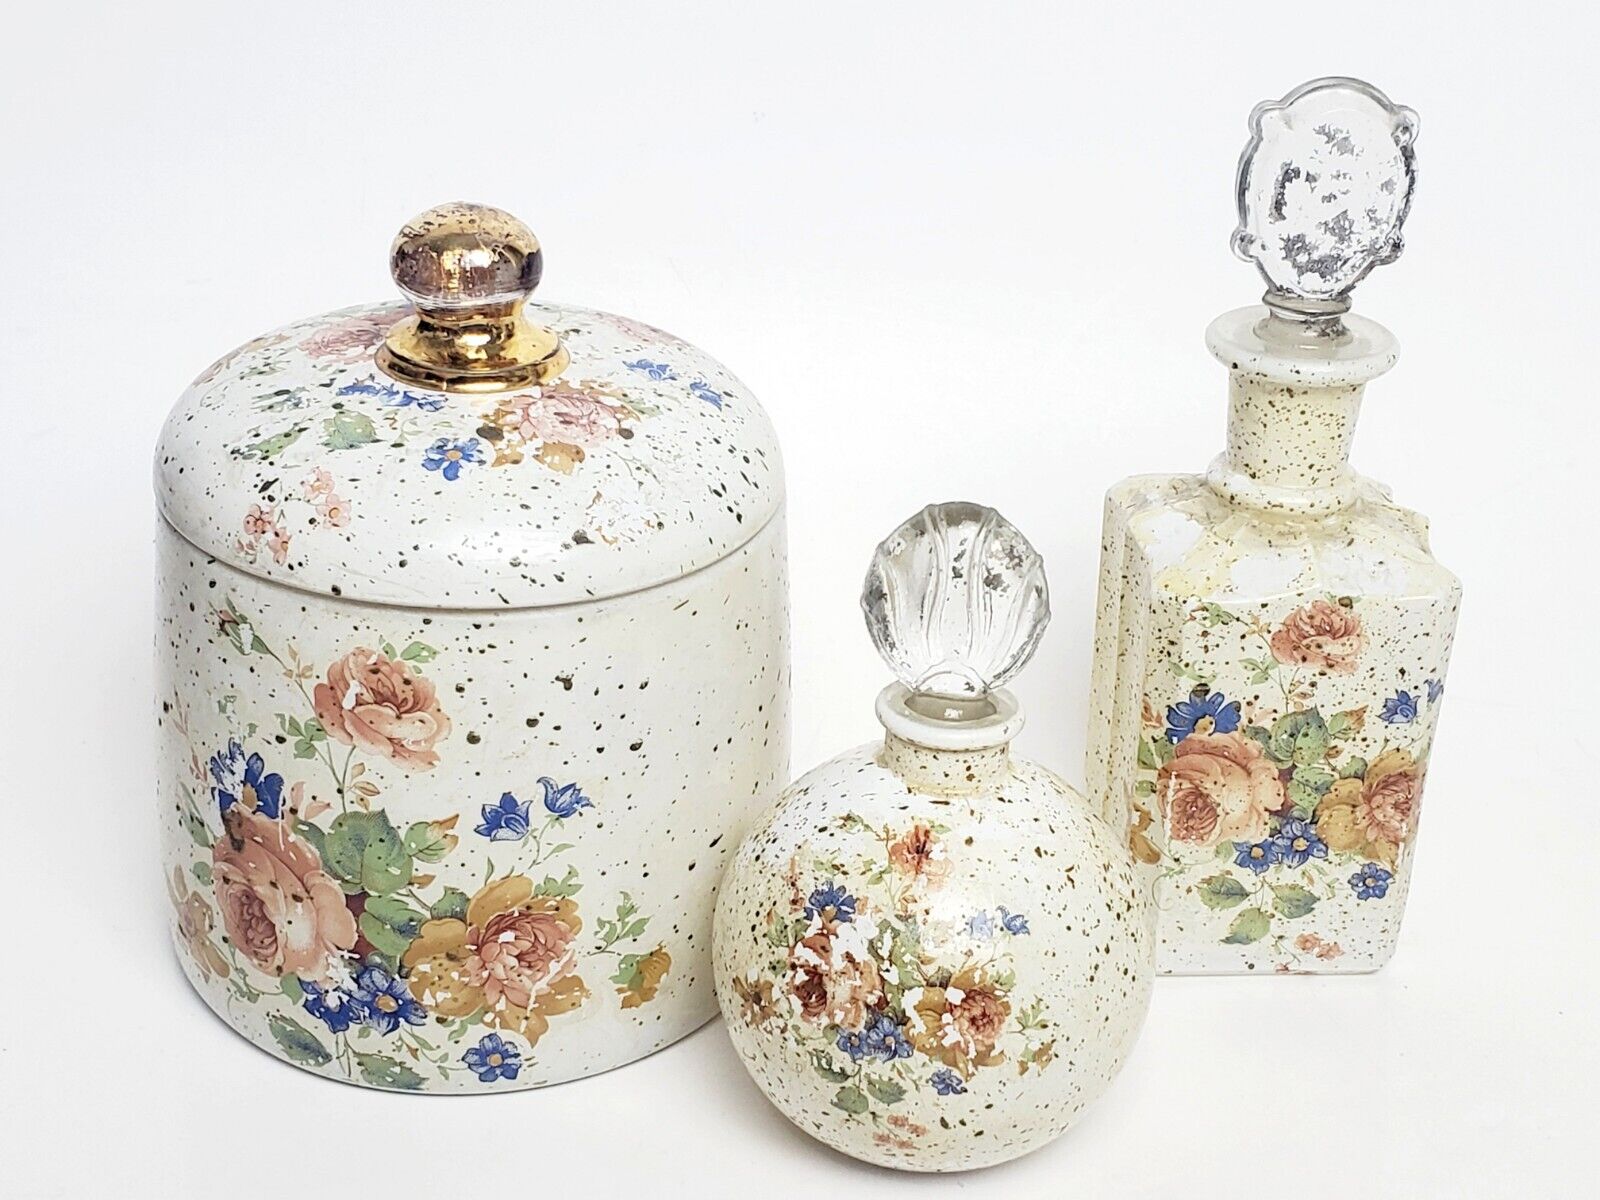 Vtg Speckled Vanity Beauty Set- Jar/Perfume/Lotion Bottles/Floral Set Of 3 Glass